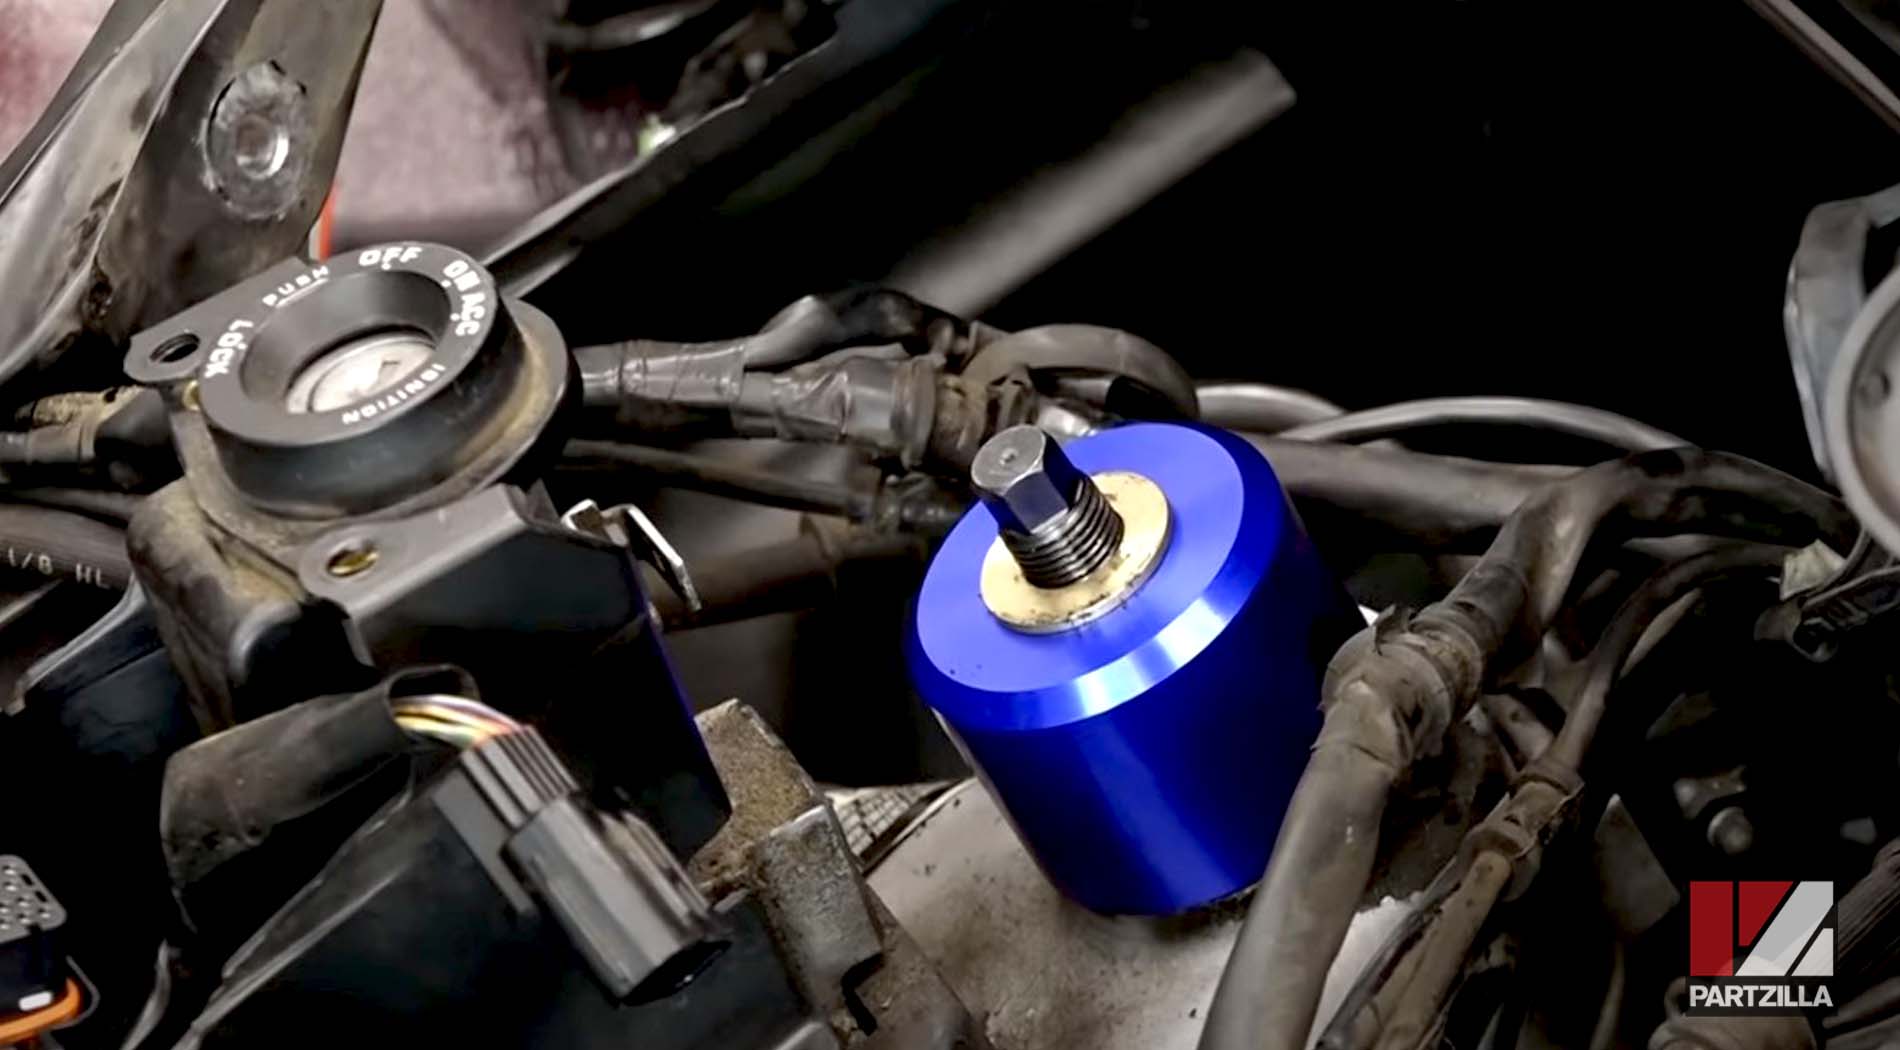 Honda Goldwing steering bearing change stem bearing removal